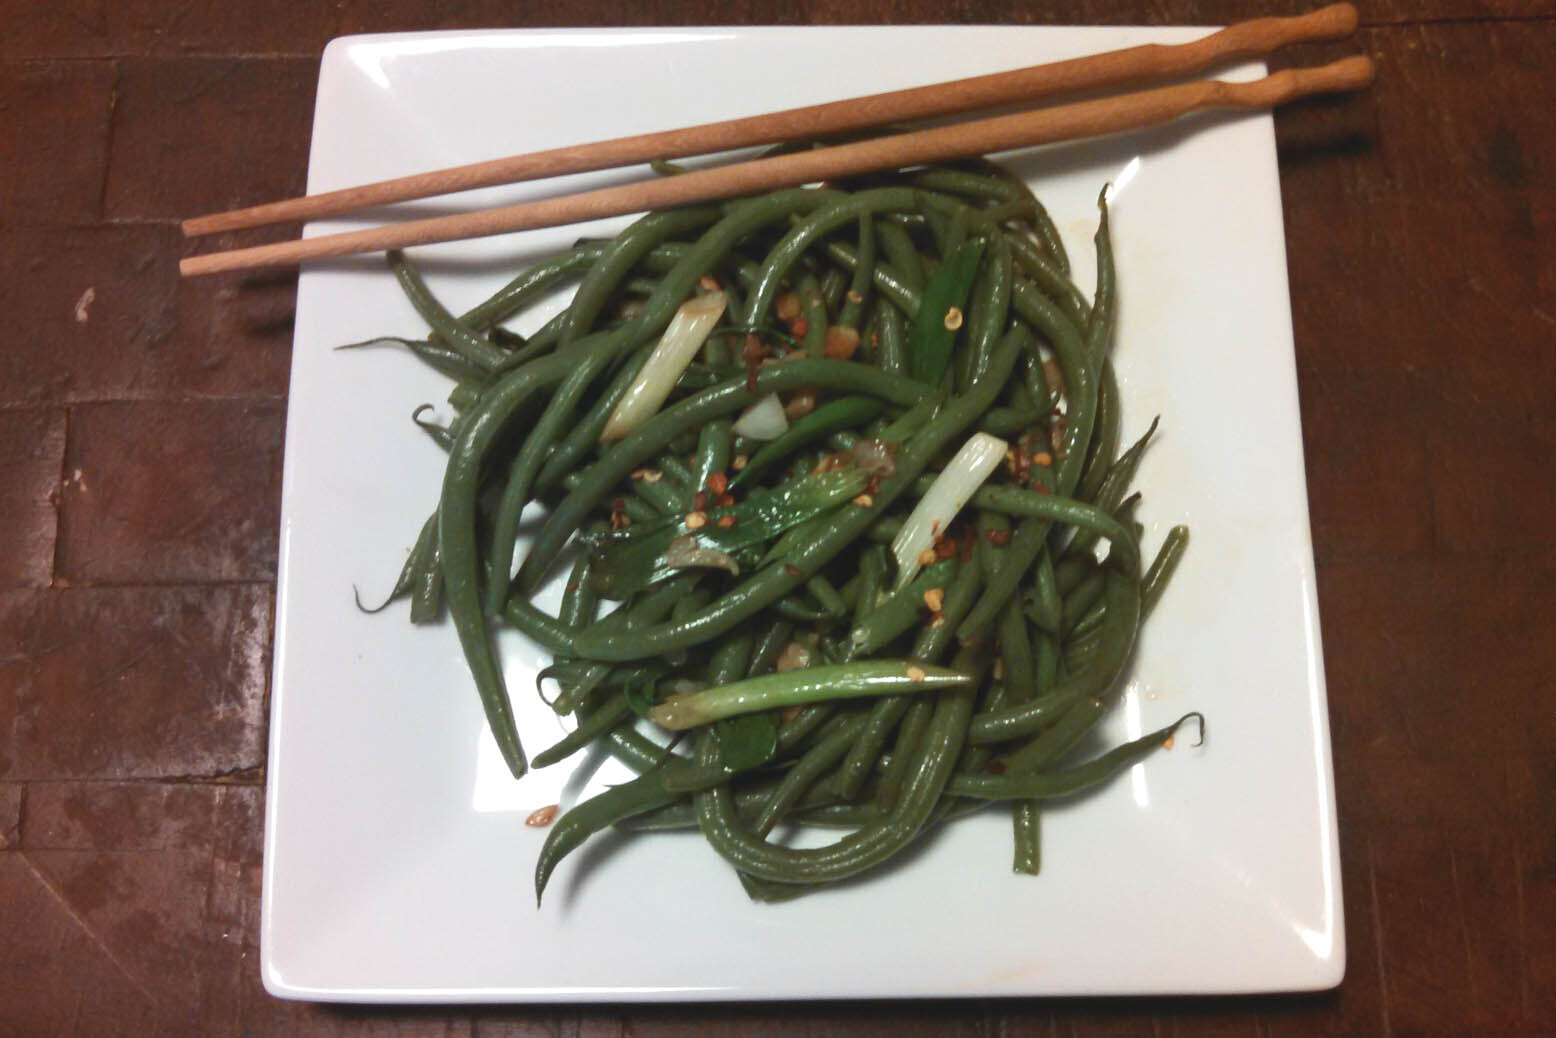 Szechuan green bean salad served on a white plate with chopsticks